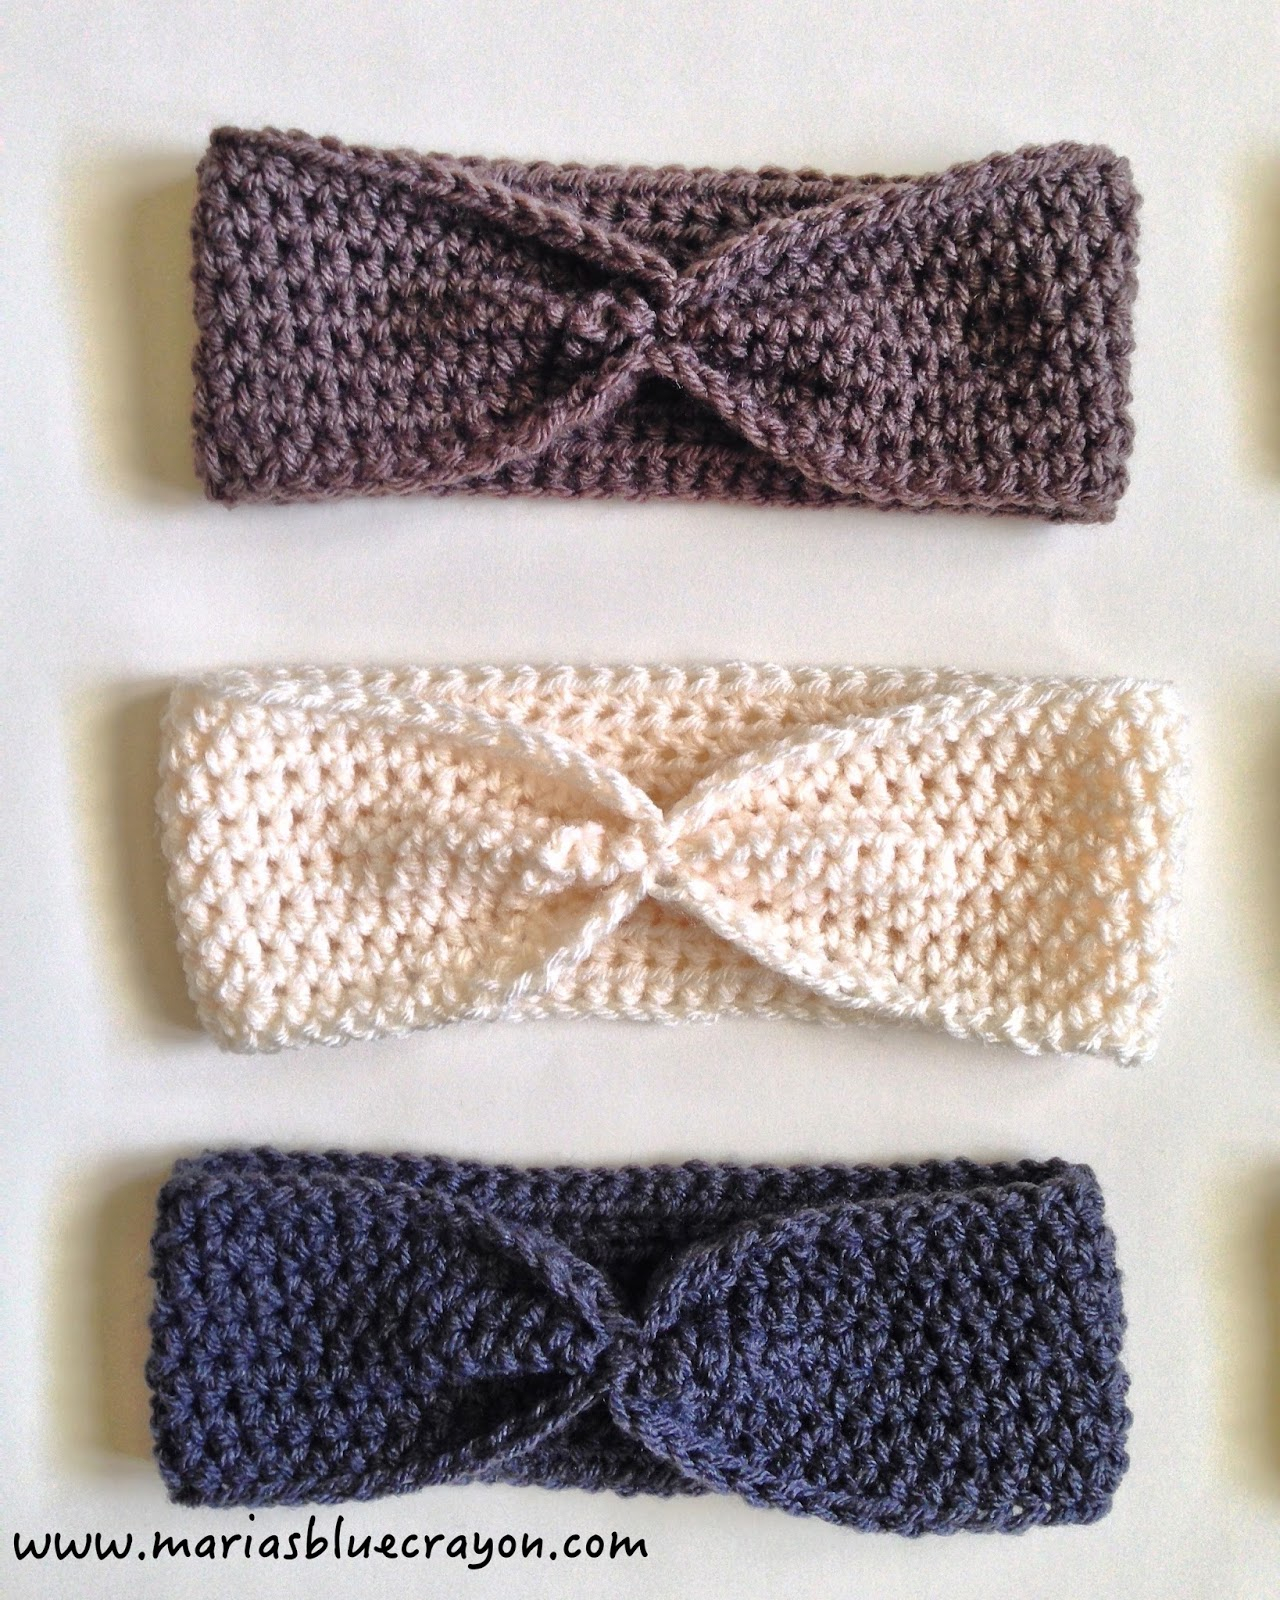 Crochet Headbands Ear Warmers Patterns Free Simple Crochet Ear Warmer Free Pattern For Beginners